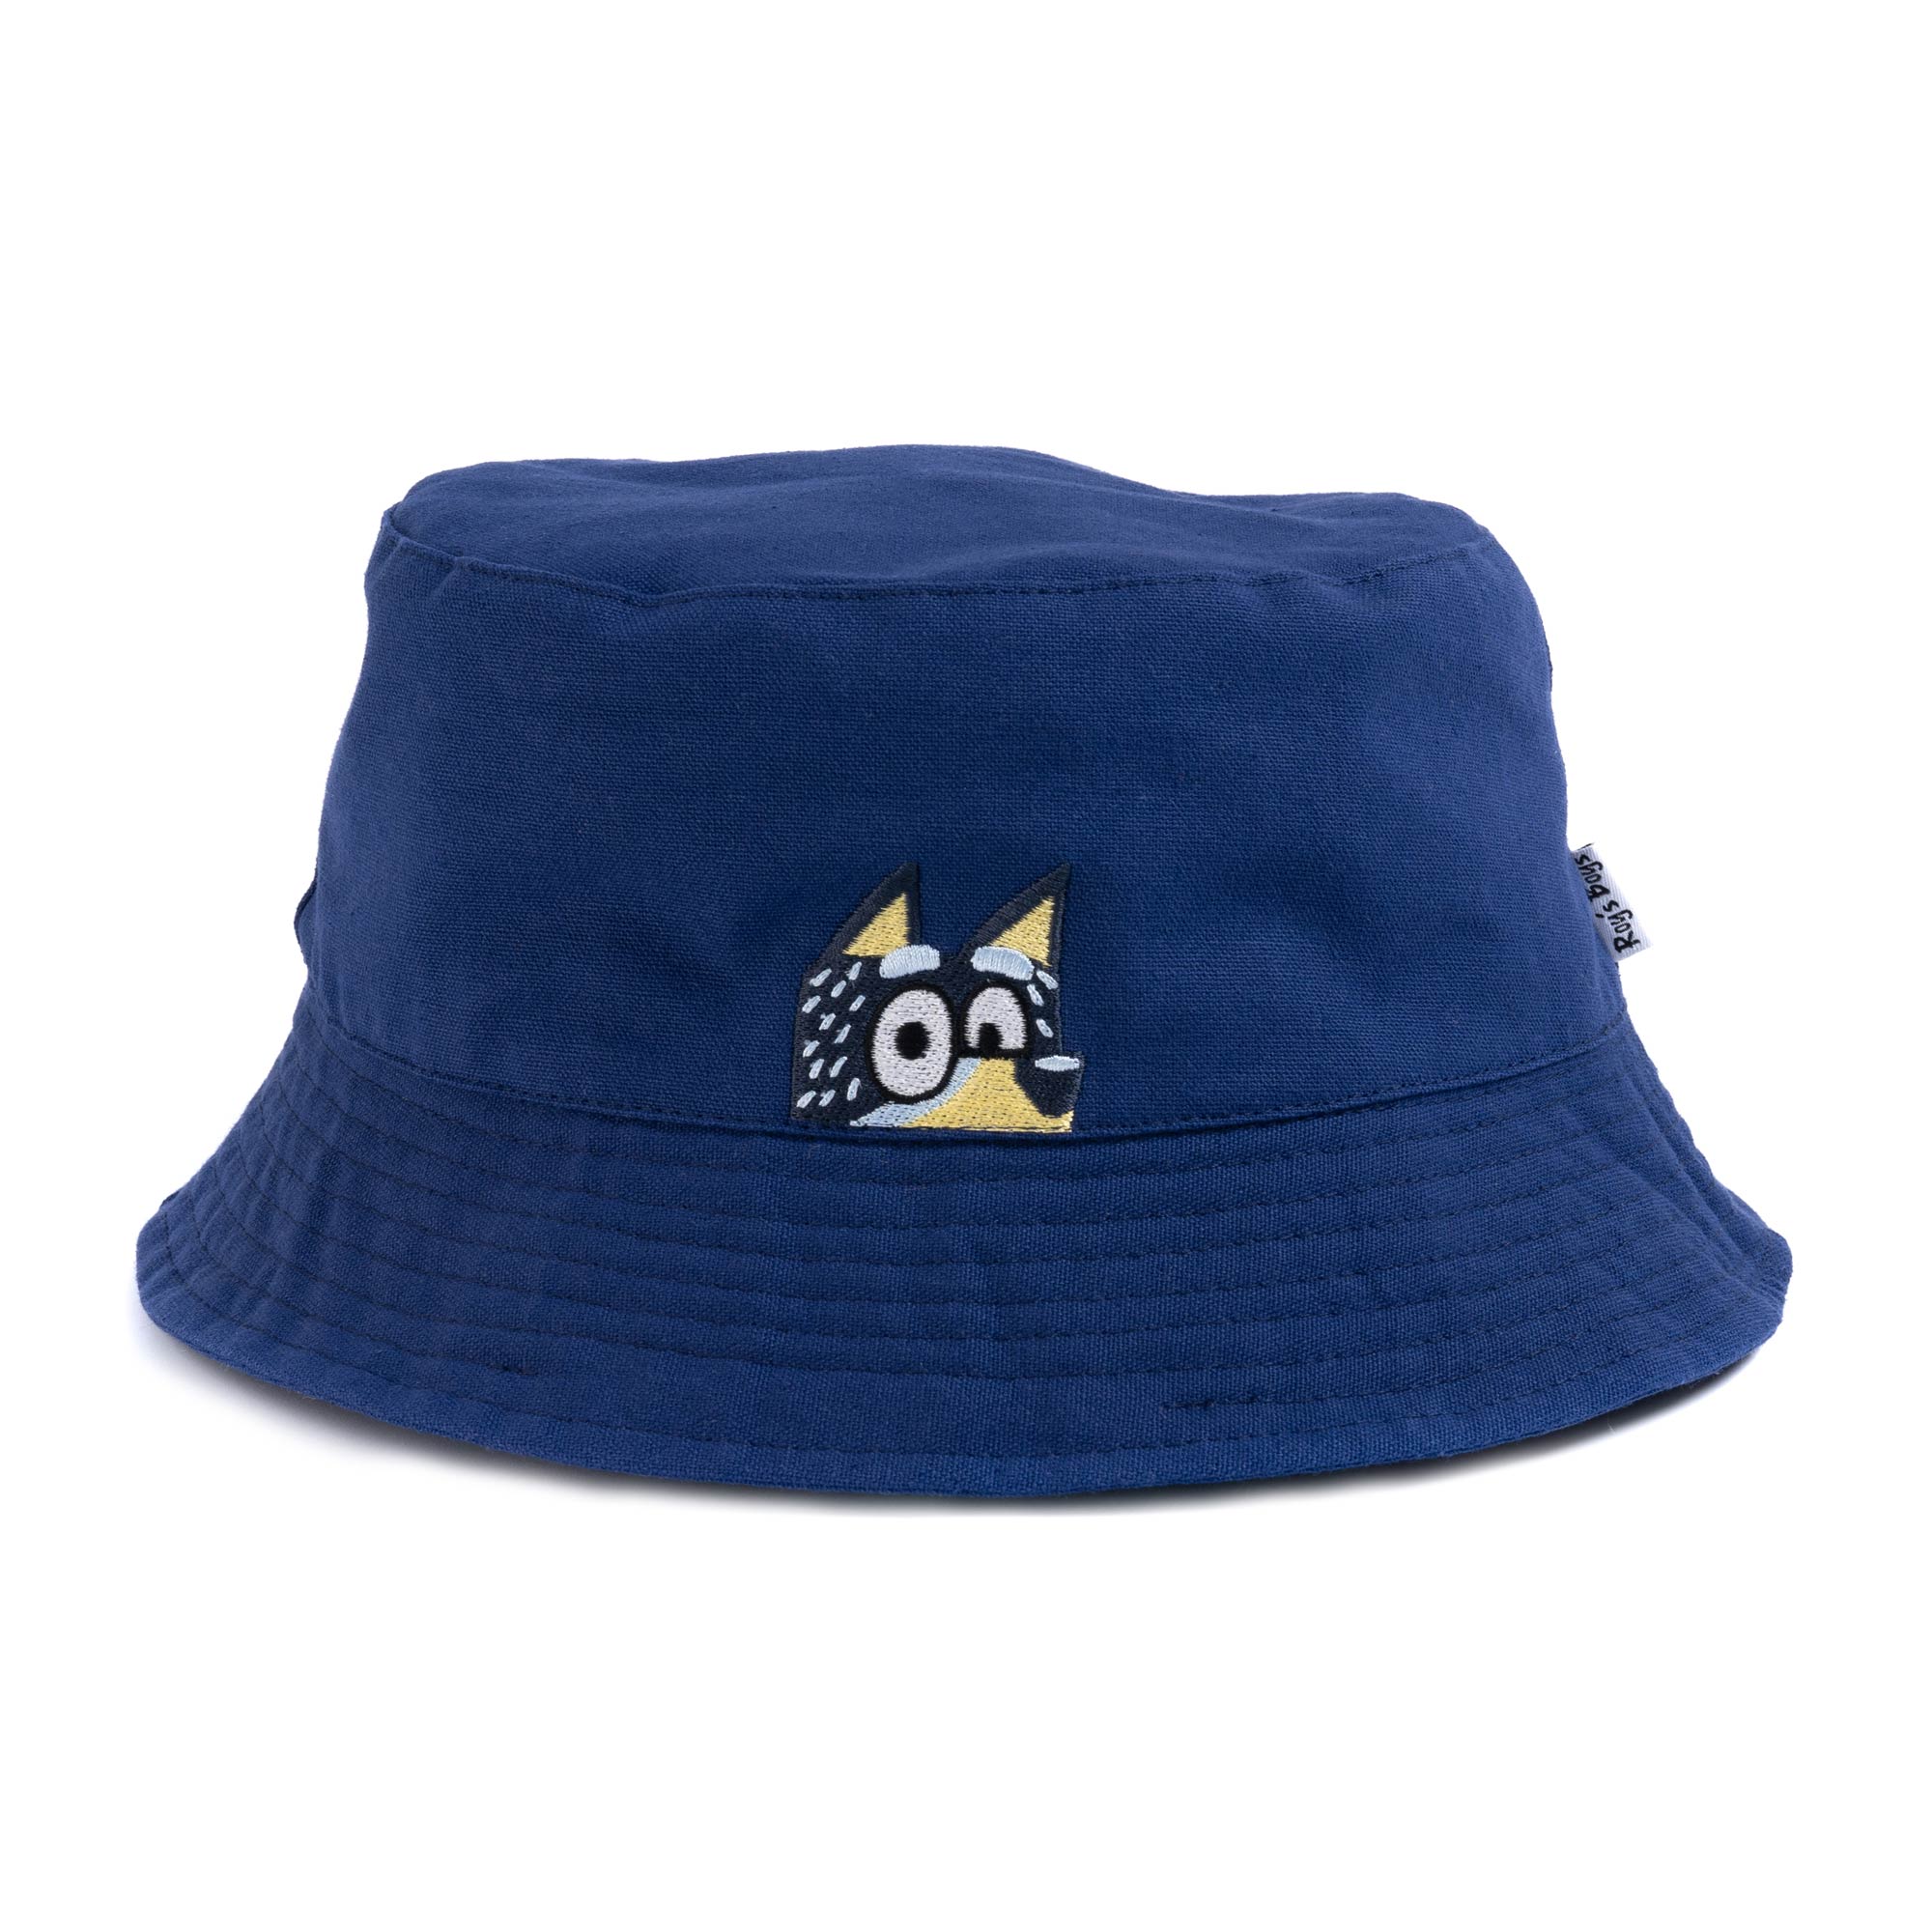 Bluey 'Bandit' Adult Bucket Hat